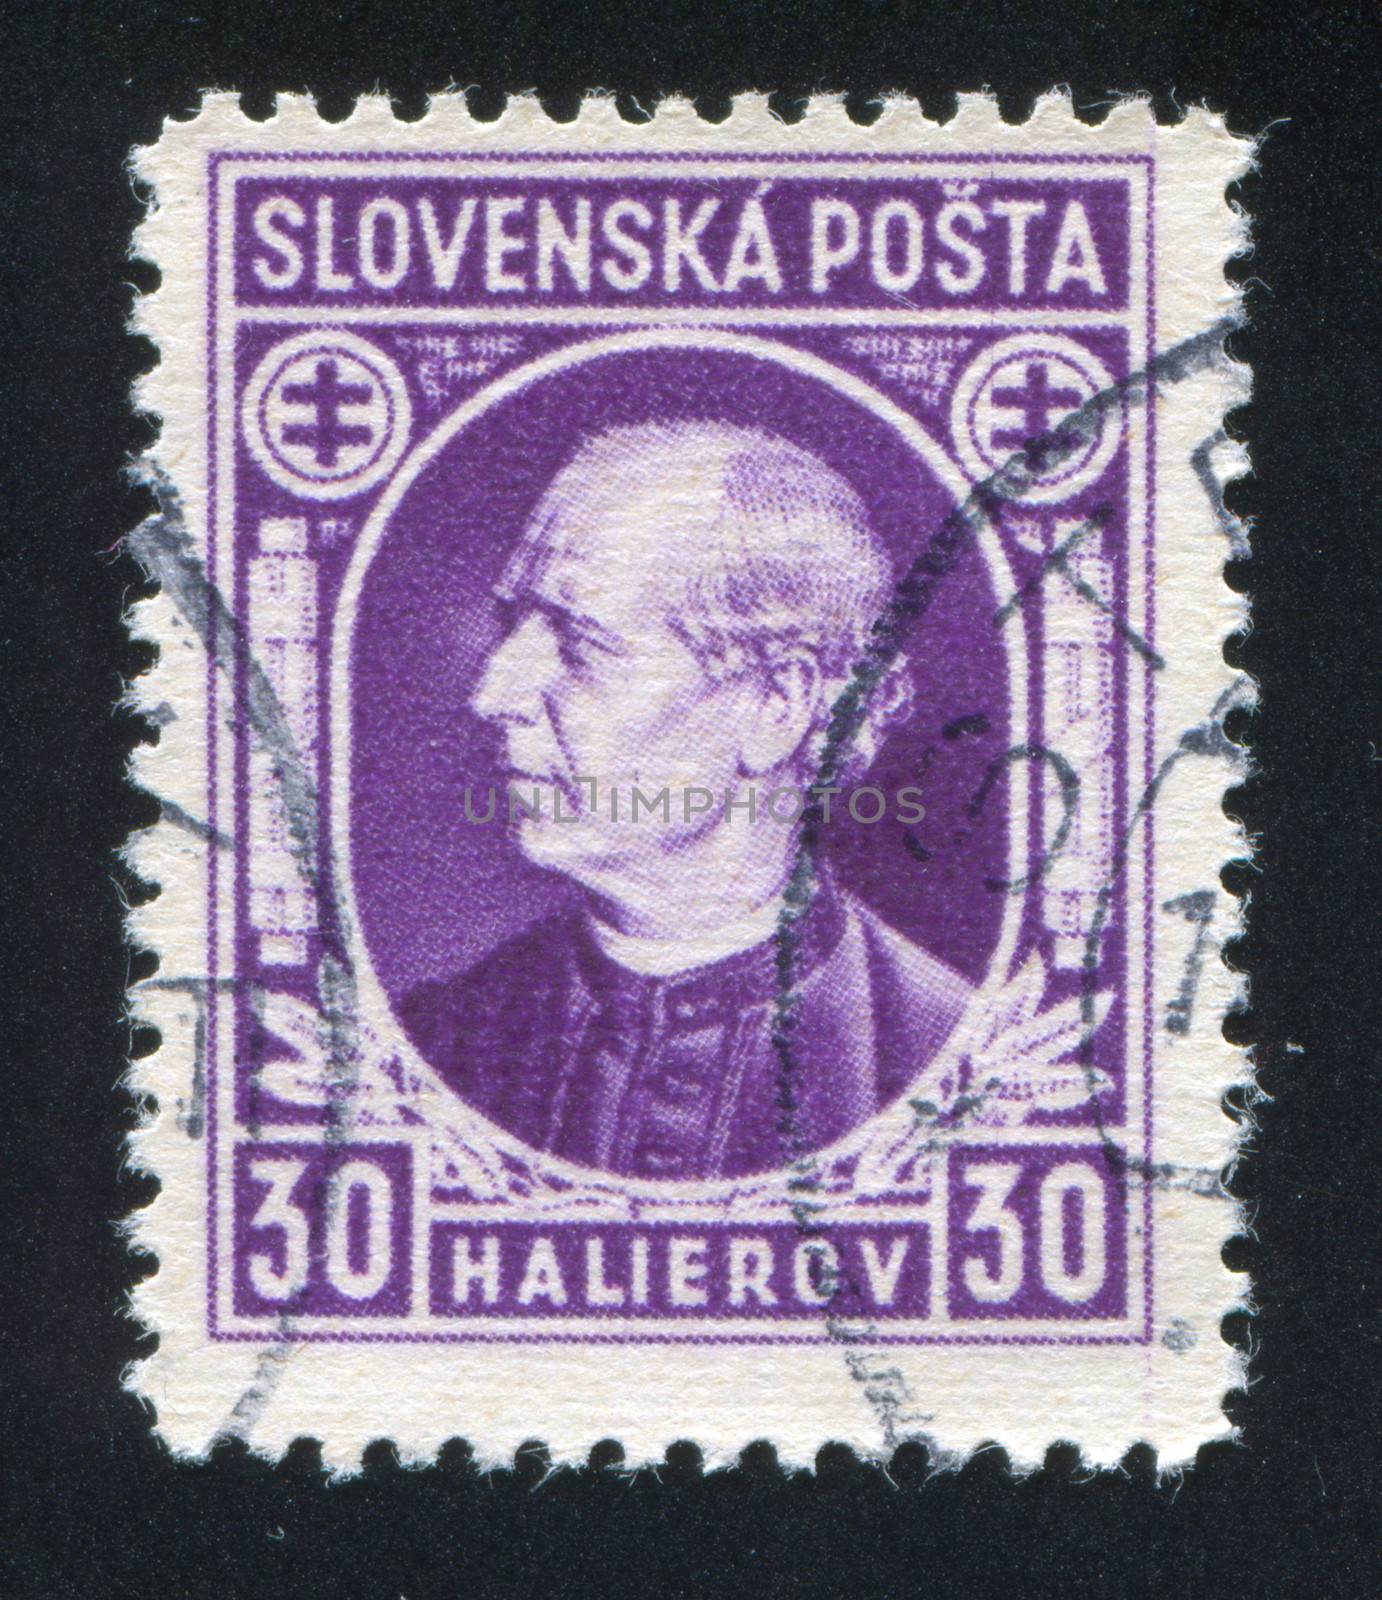 SLOVENIA - CIRCA 1939: stamp printed by Slovenia, shows Andrej Hlinka, circa 1939